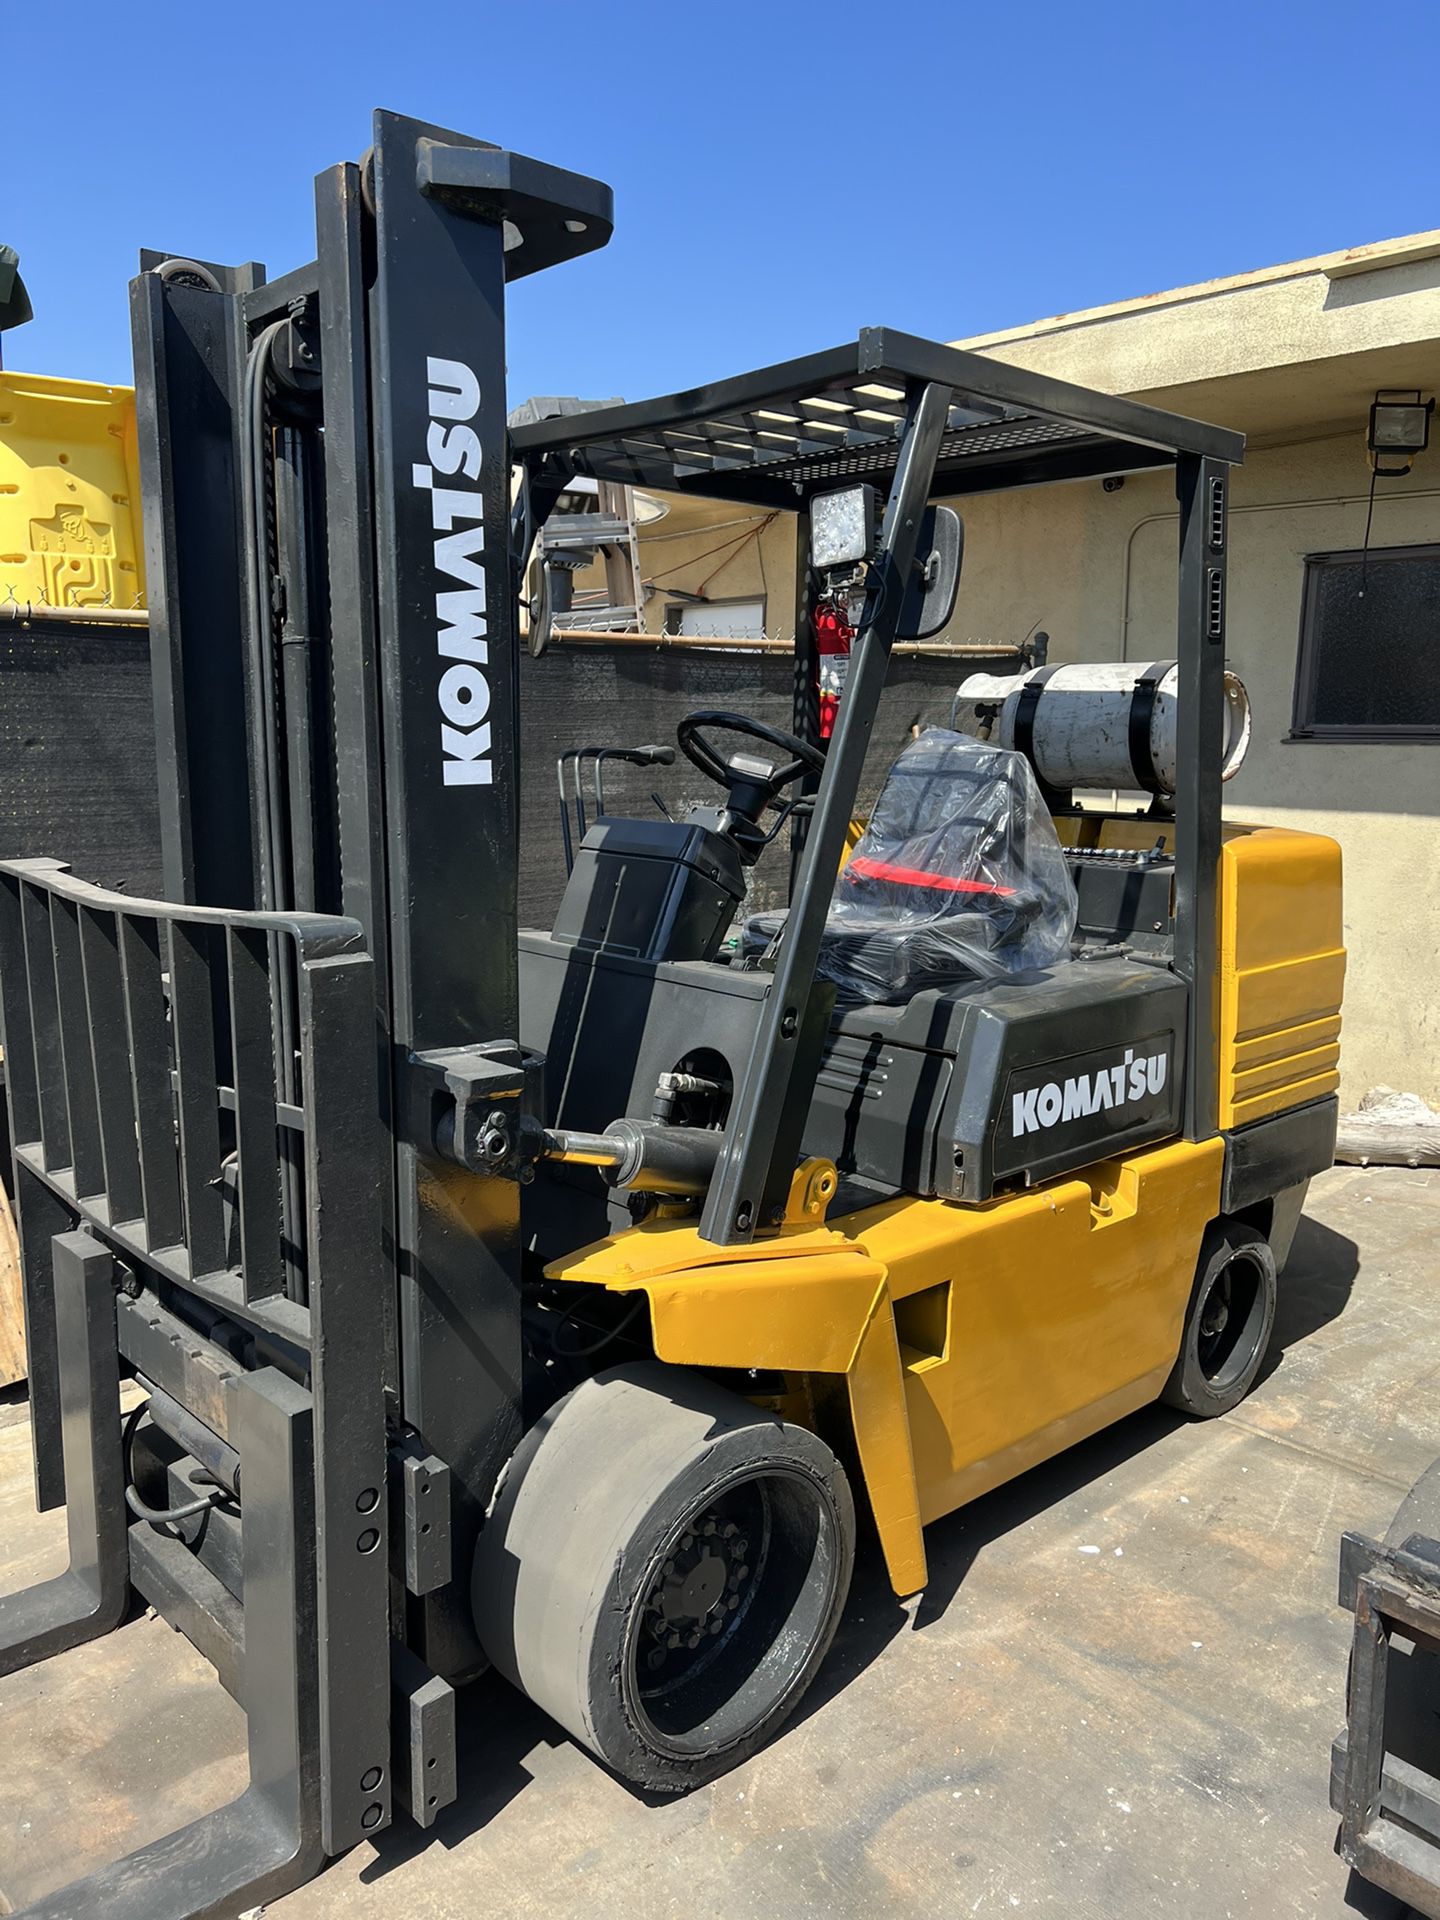 Komatsu Forklift 10,000 pound capacity